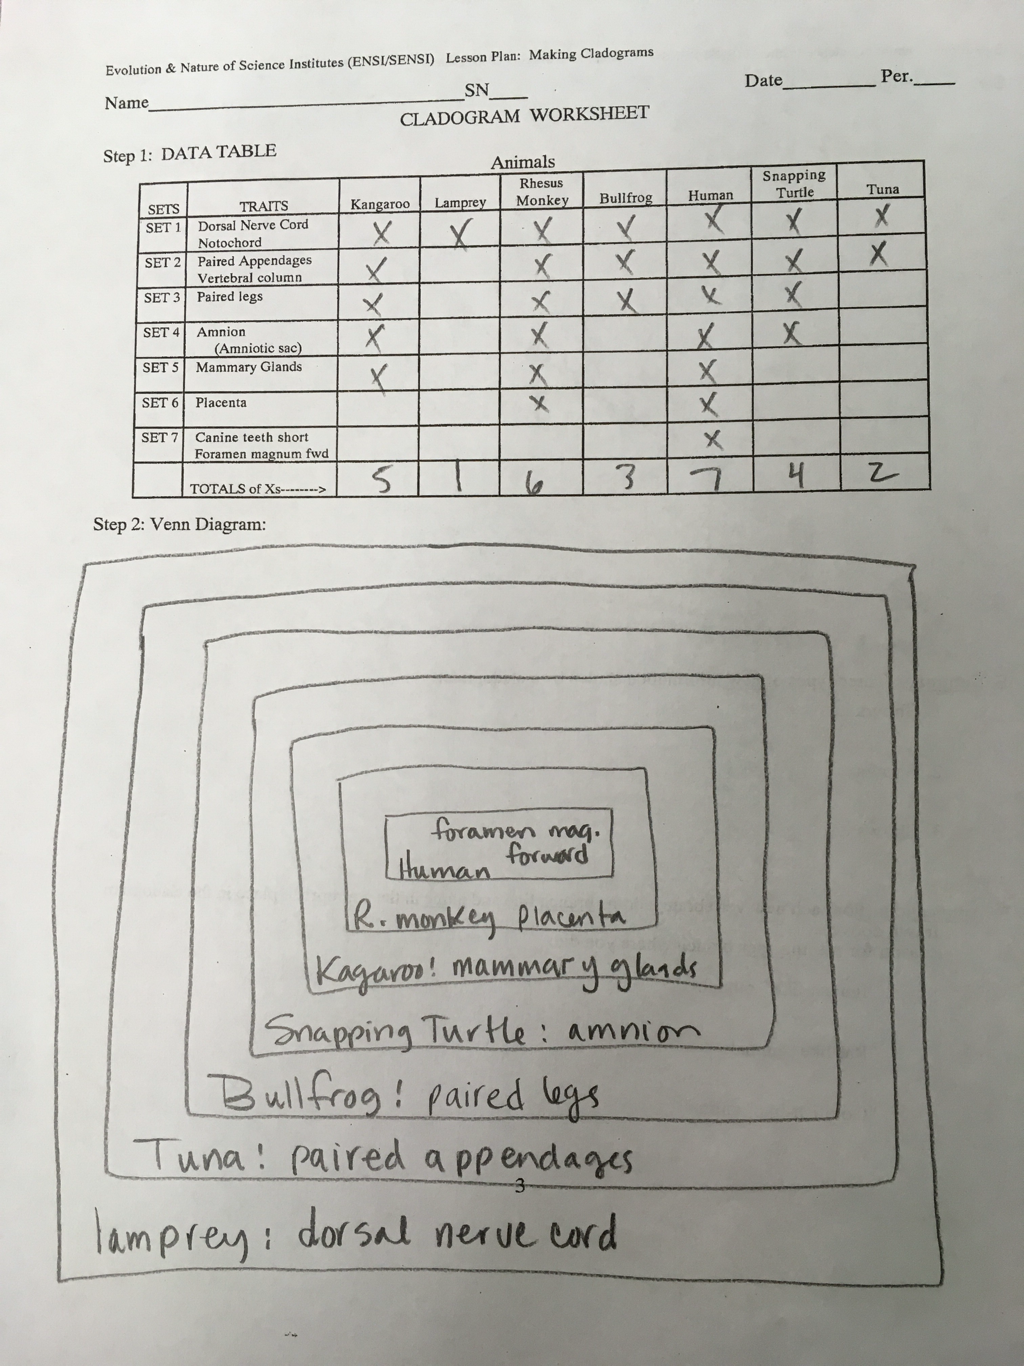 cladogram-worksheet-key